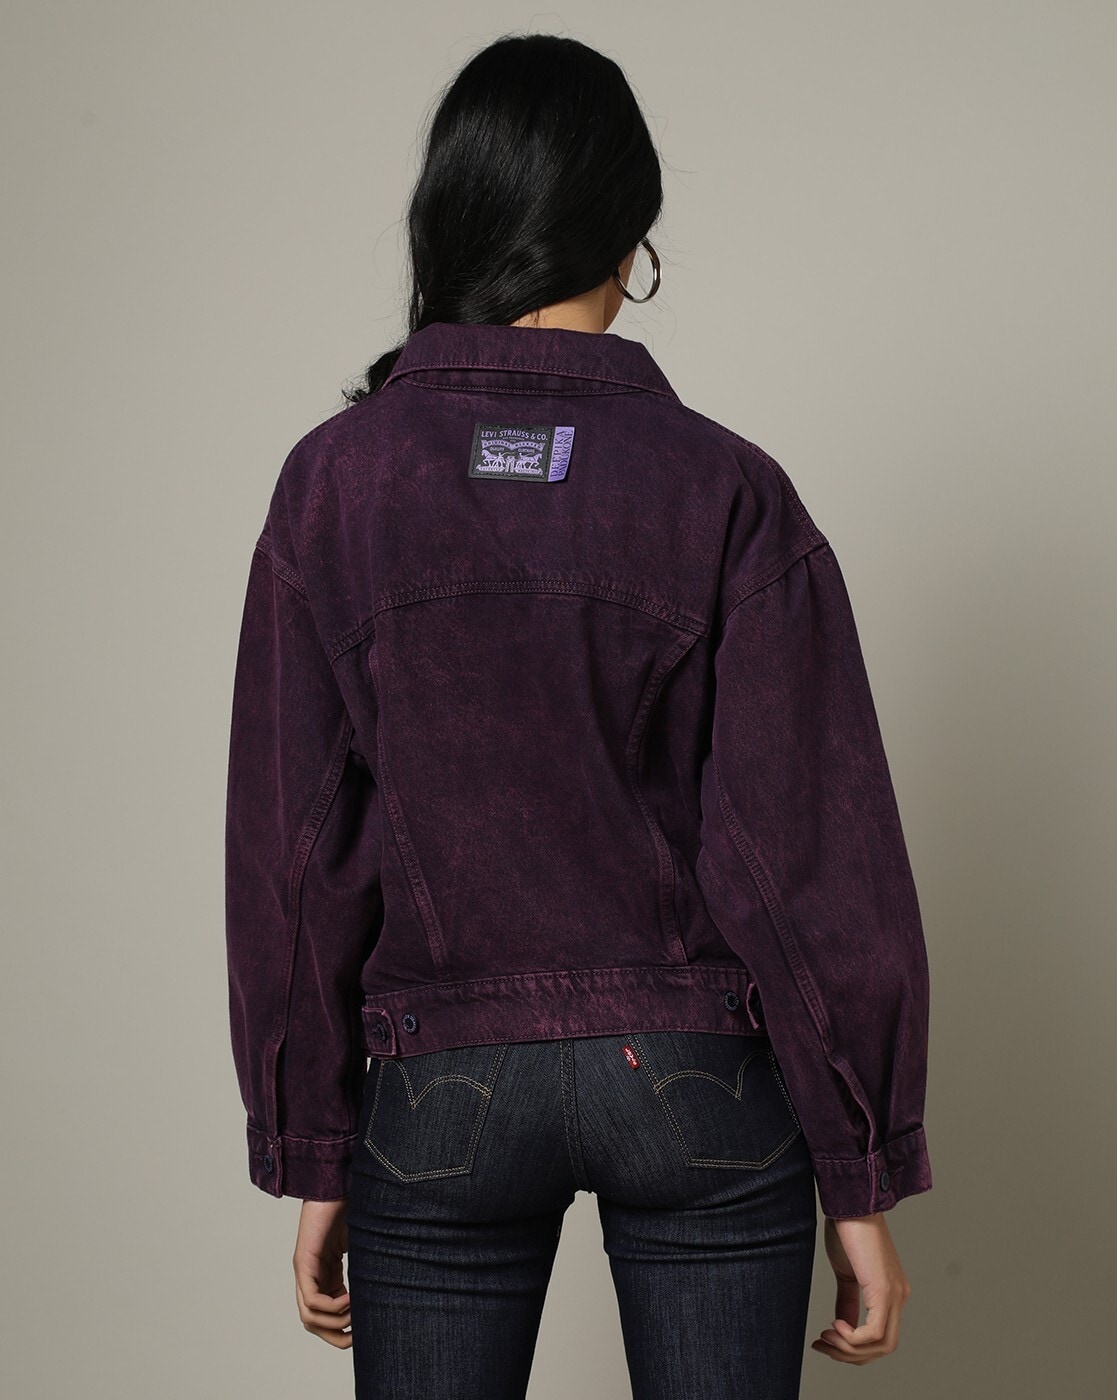 jean jacket purple